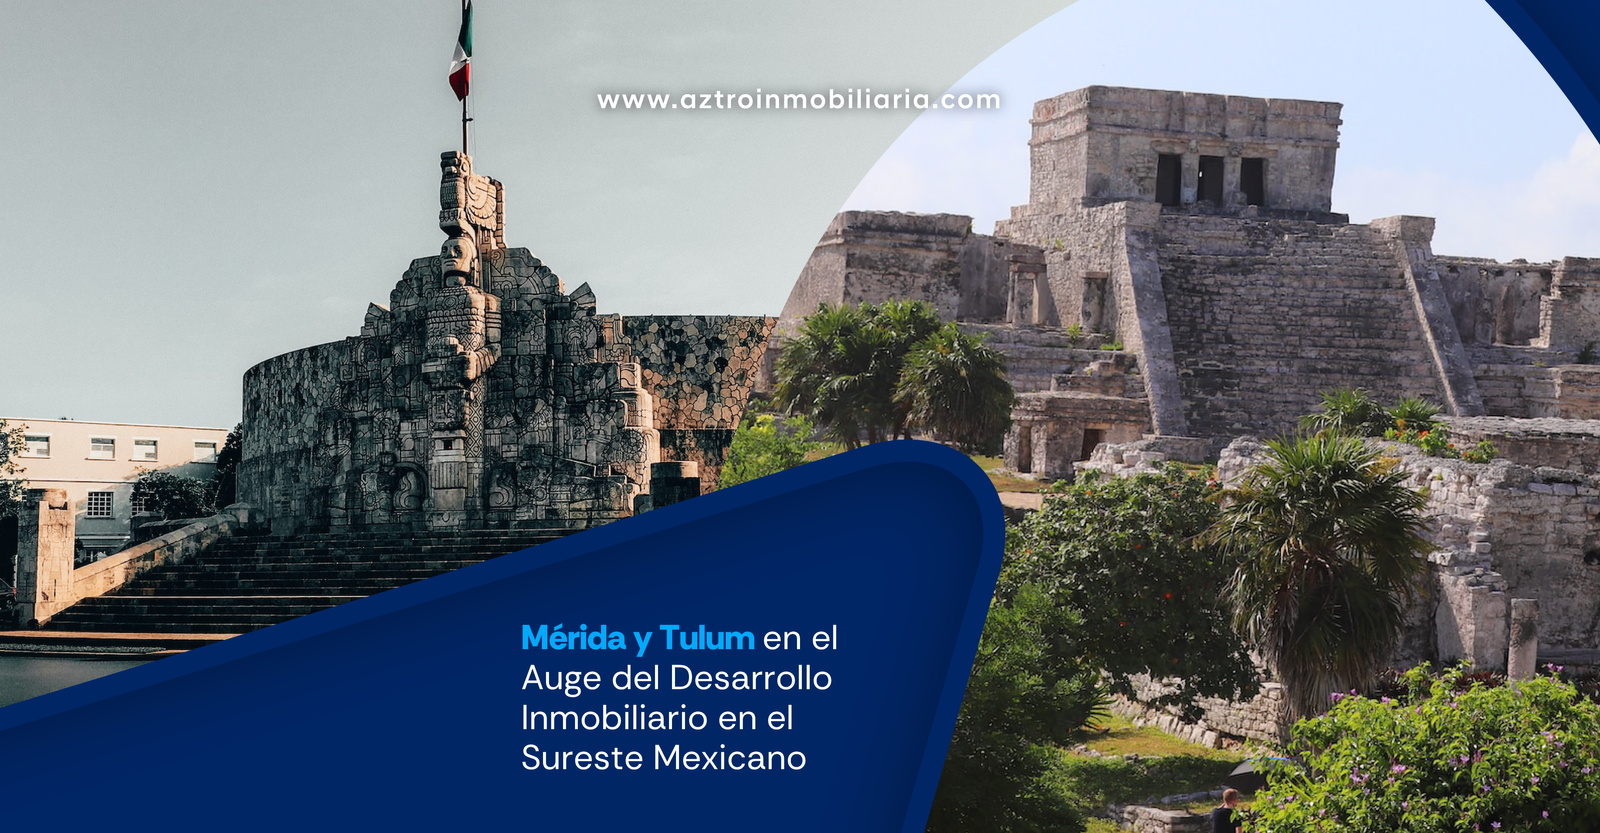 Descubriendo oportunidades: Mérida y Tulum en el Auge del Desarrollo Inmobiliario en el Sureste Mexicano